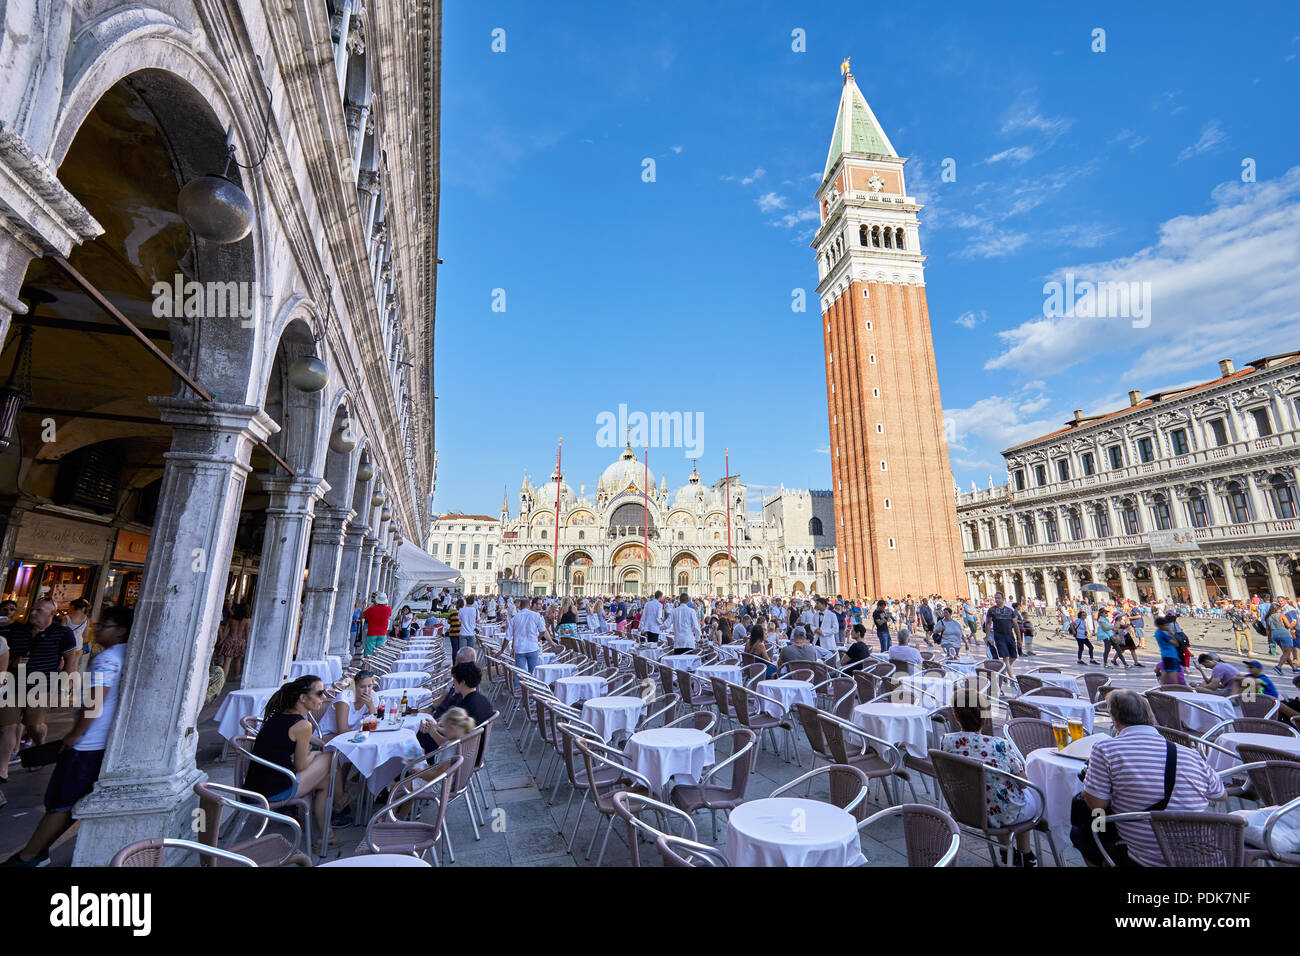 La place Saint Marc avec son tableau avec les gens et les touristes, ciel bleu dans une journée ensoleillée en Italie Banque D'Images